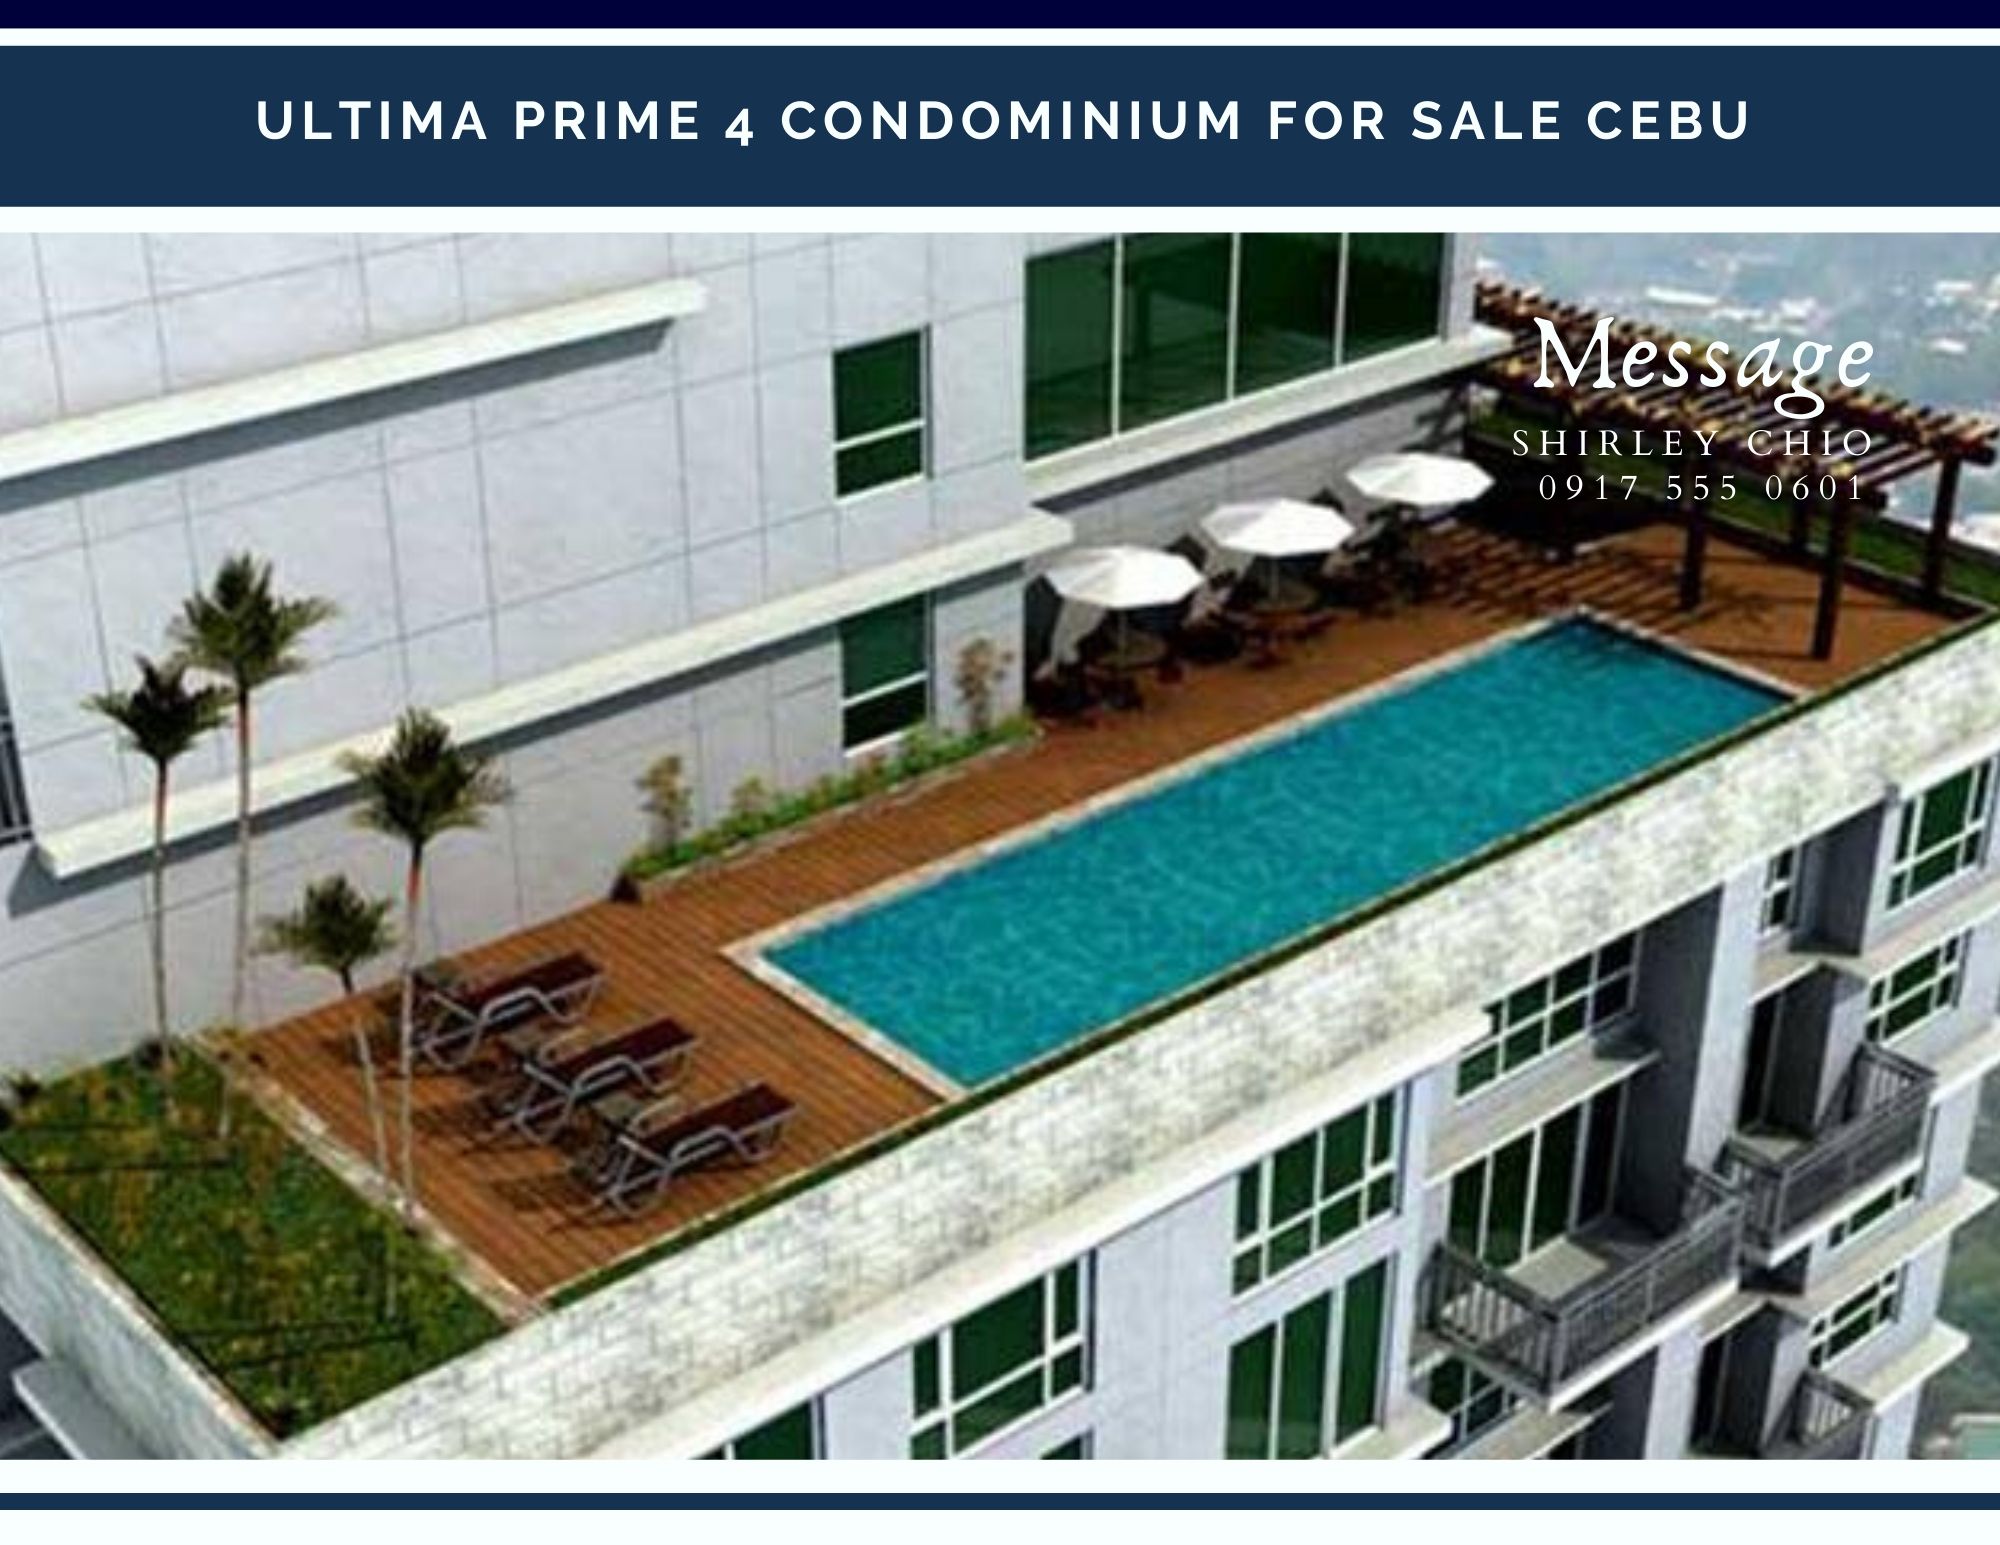 Ultima Prime 4 Condominium for Sale in Fuente Cebu Philippines